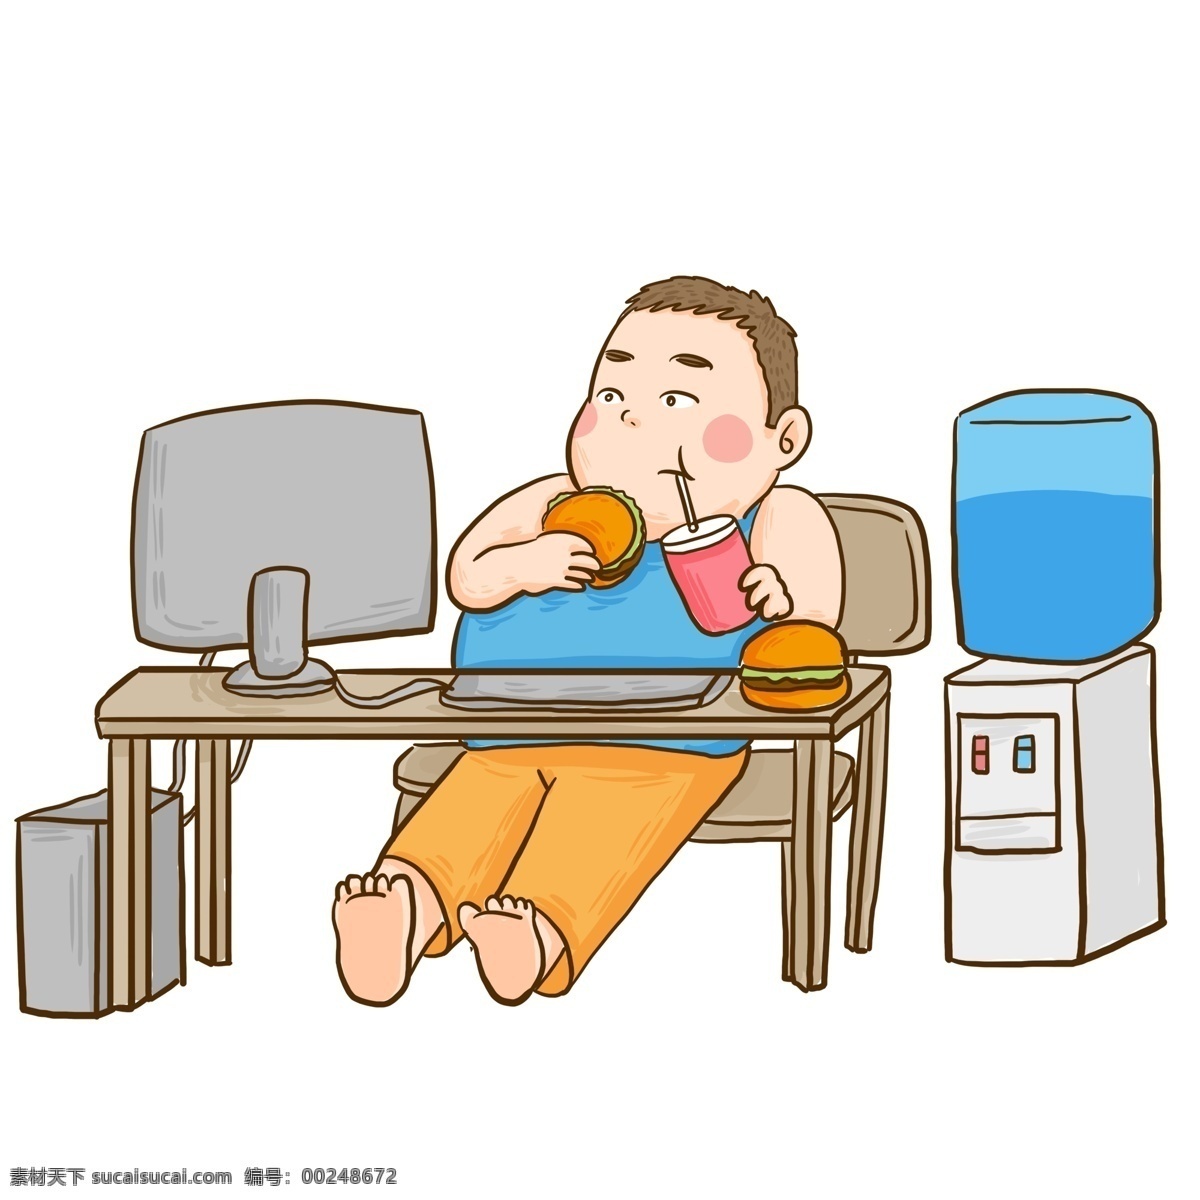 办公室 里 吃 汉堡 胖子 漫画 人物 电脑 办公桌 男孩 手绘 肥宅 肥仔 吃汉堡 儿童